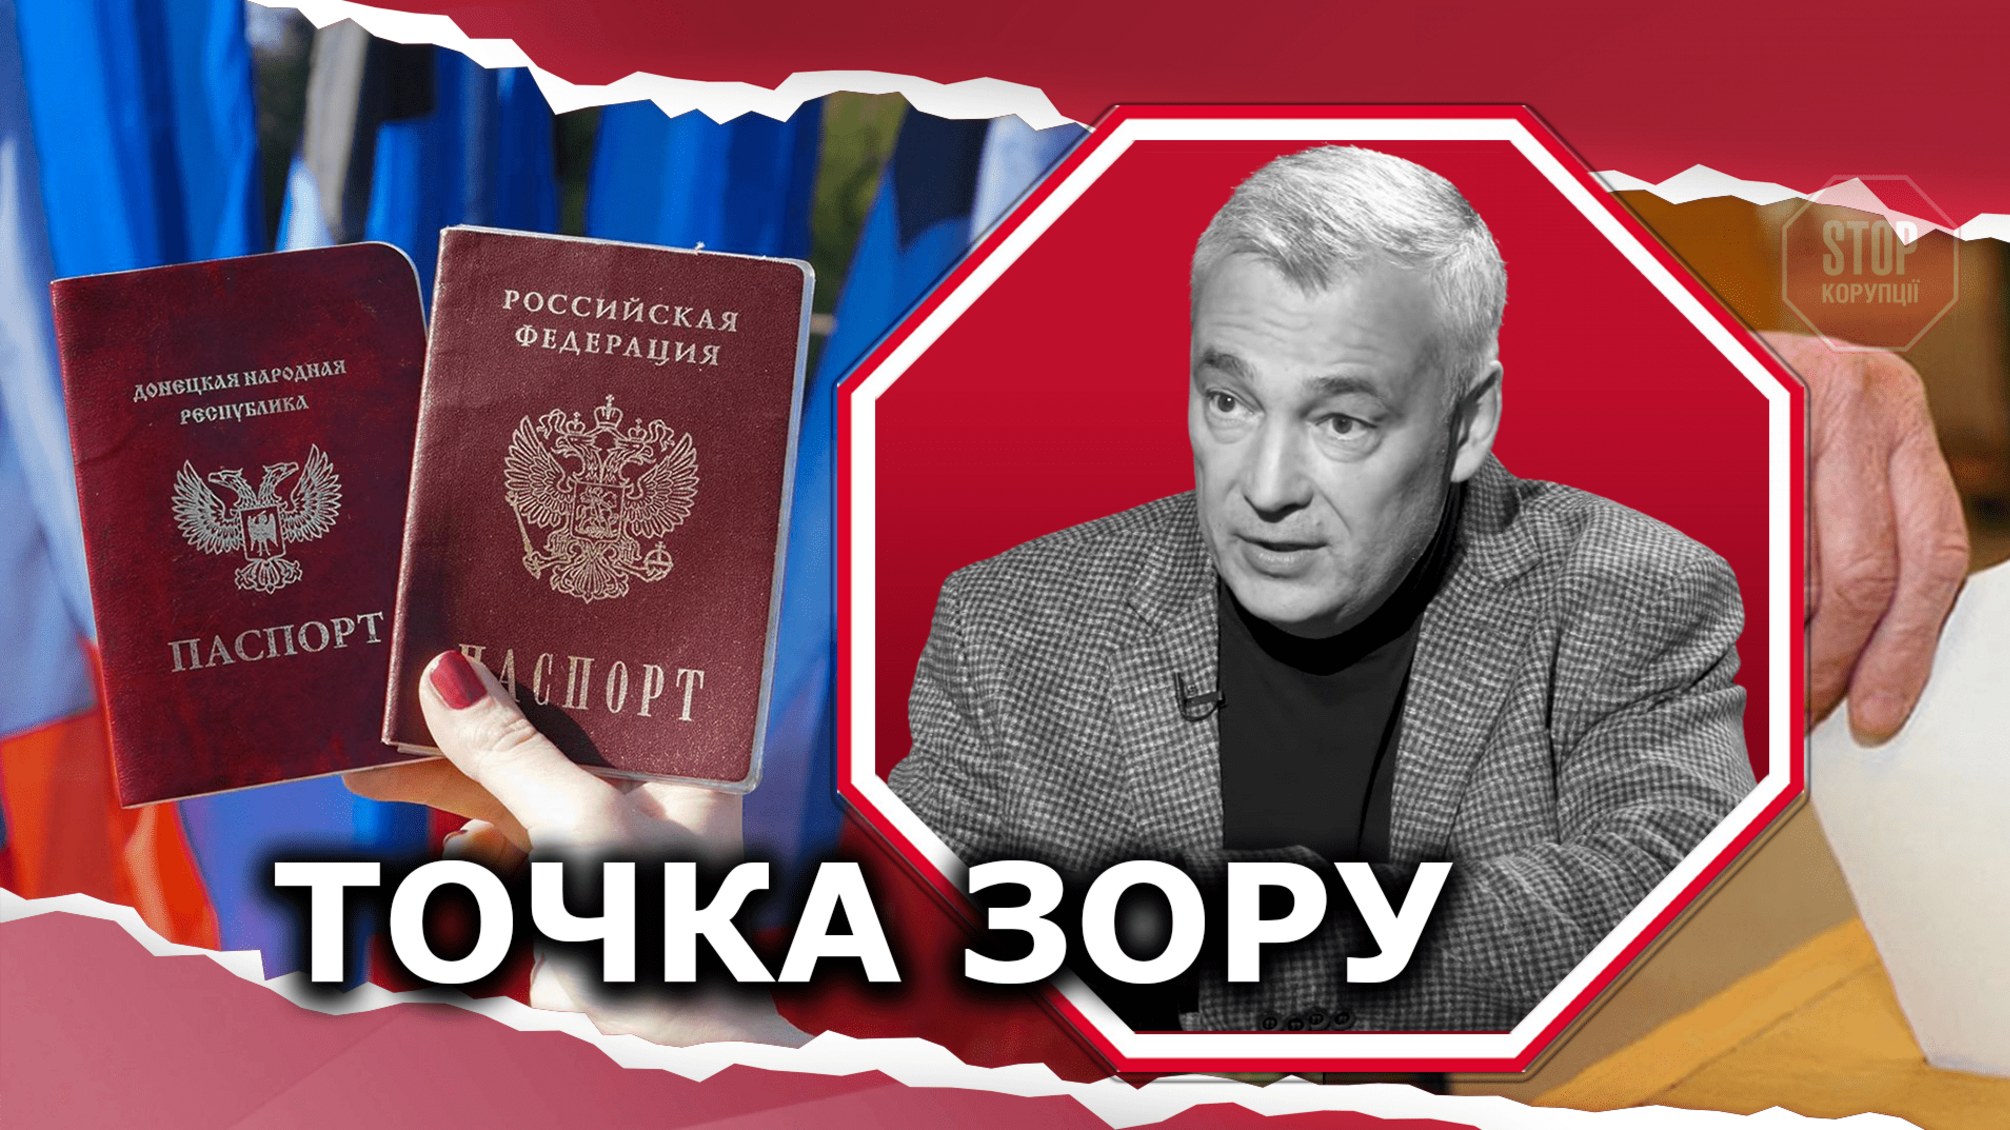 Ескалація на Донбасі: напередодні виборів до Держдуми Росія прискорила видачу паспортів на окупованих територіях